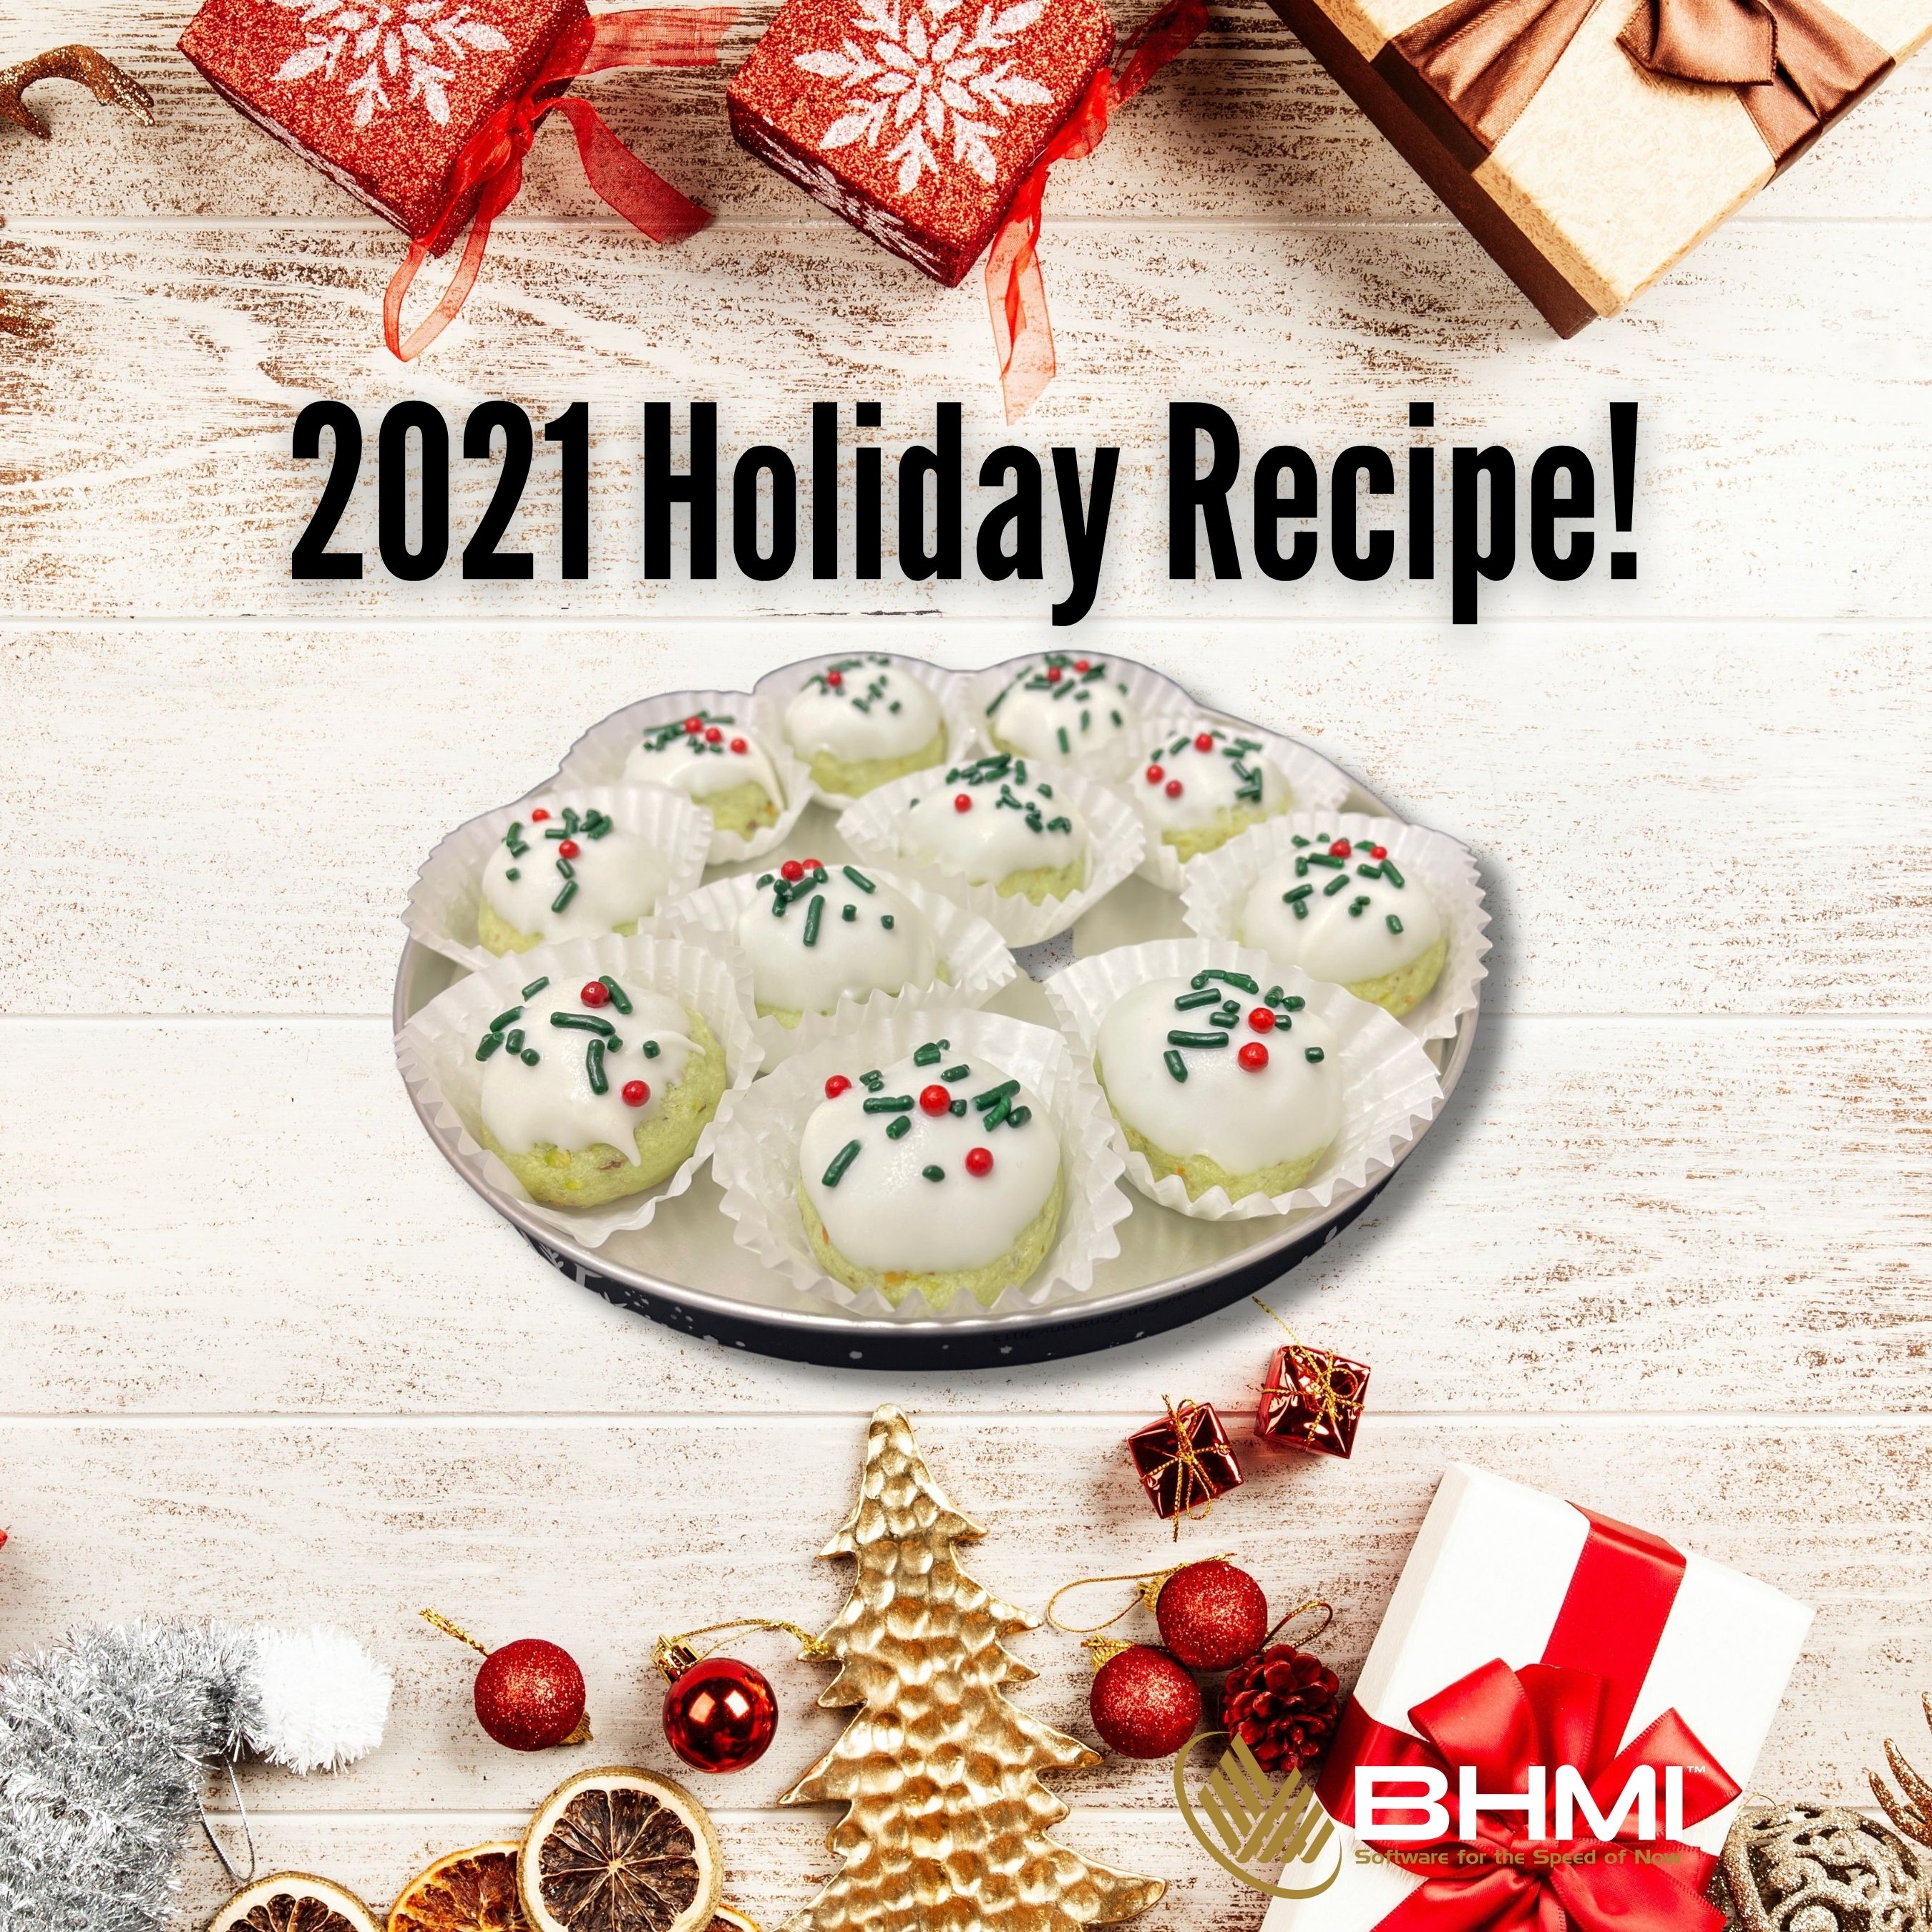 2021 Holiday Recipe!